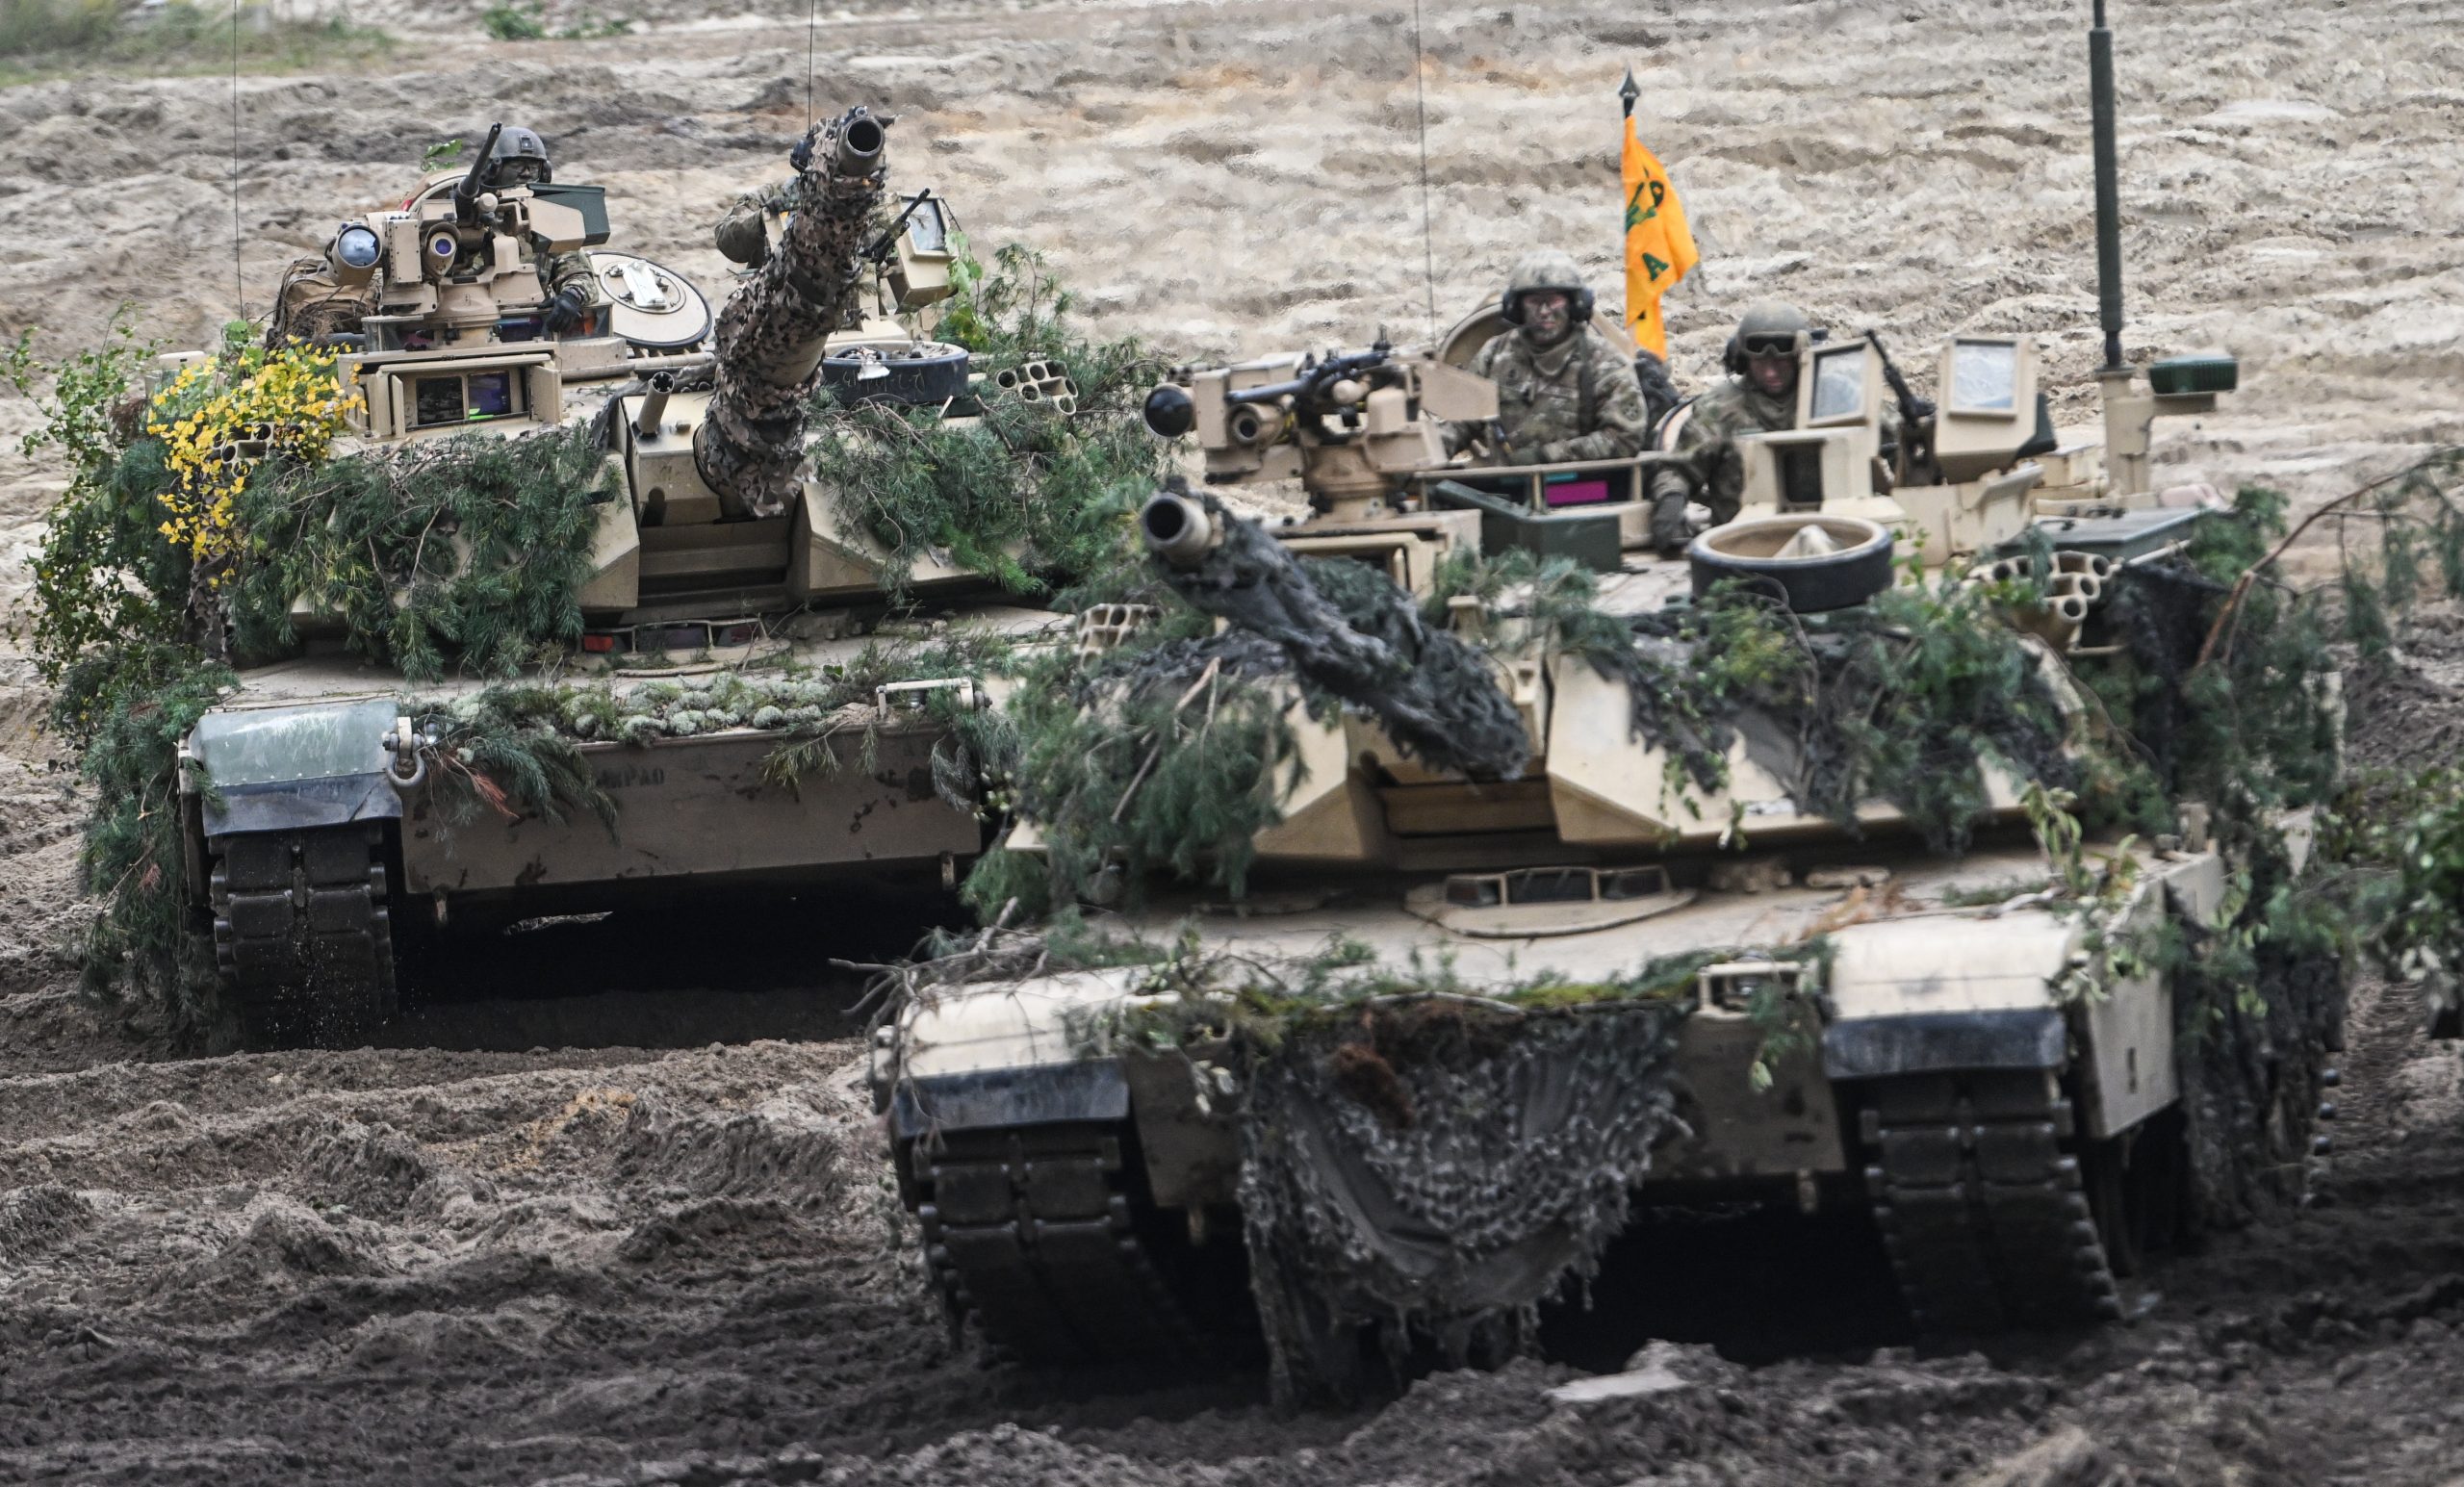 Tanket amerikane arrijnë në maj në Gjermani, ushtarët ukrainas së shpejti fillojnë trajnimin